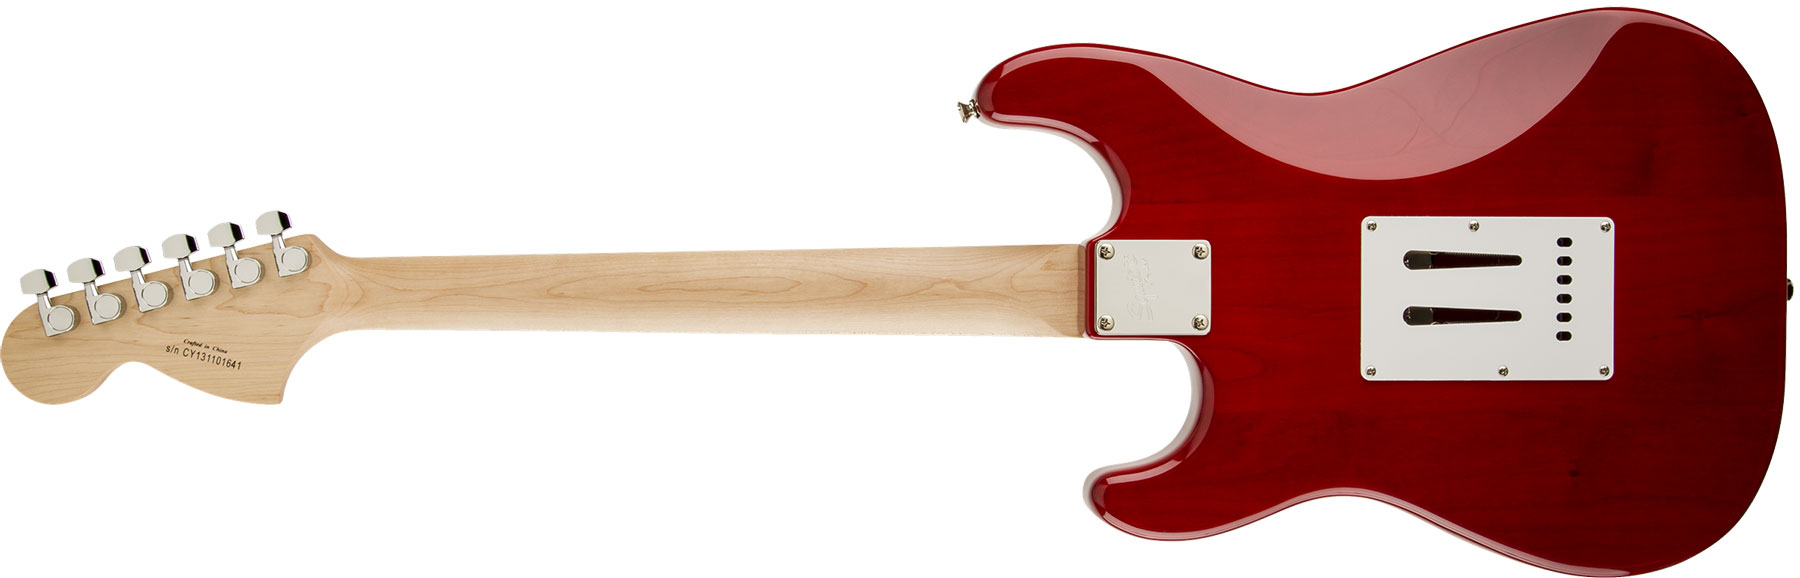 Squier Strat Standard Lau - Cherry Sunburst - E-Gitarre in Str-Form - Variation 1